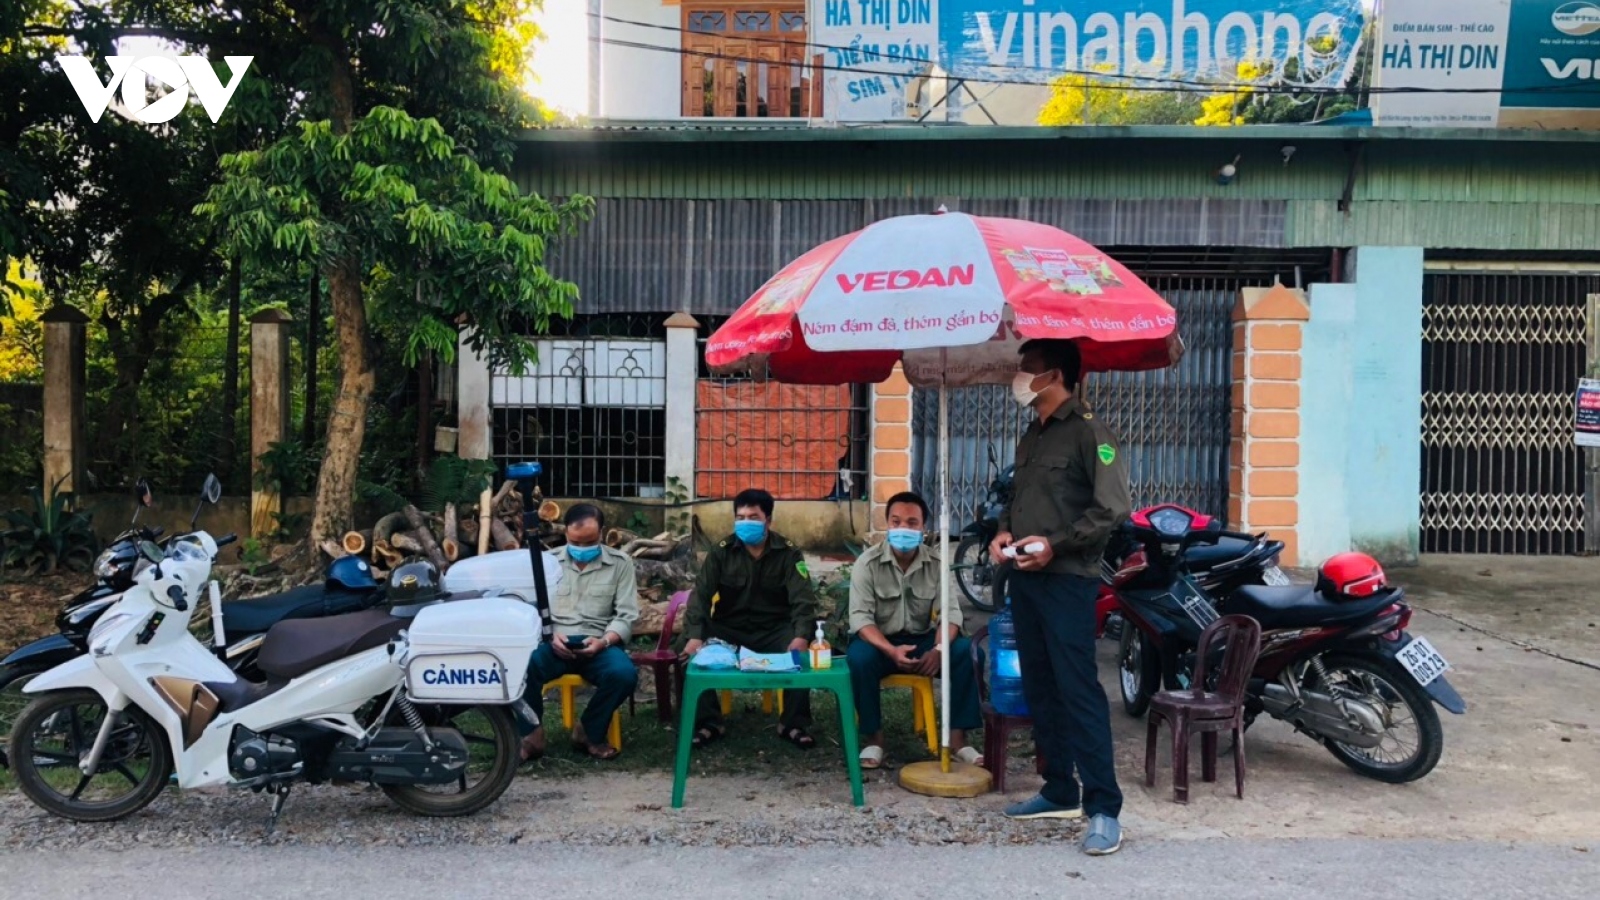 Mỗi xã ở Phù Yên (Sơn La) được lập một điểm xay xát thóc và cửa hàng thực phẩm